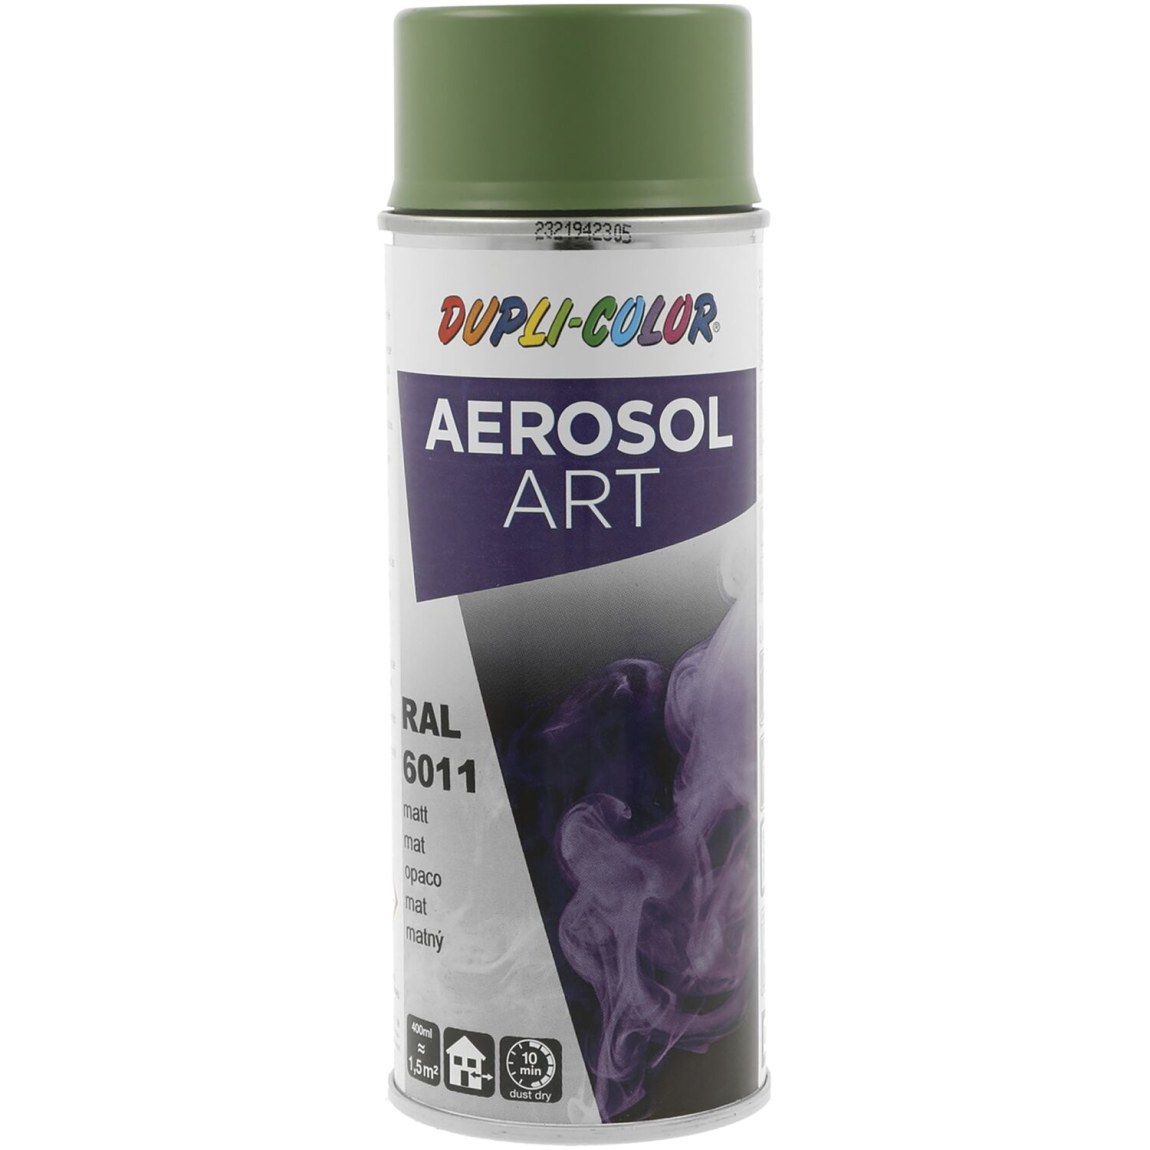 Dupli-Color Aerosol Art sprej 400 ml rezedová zelená mat / RAL 6011 - Železářství Chemicko-technické výrobky Technické aerosoly Lak ve Spreji